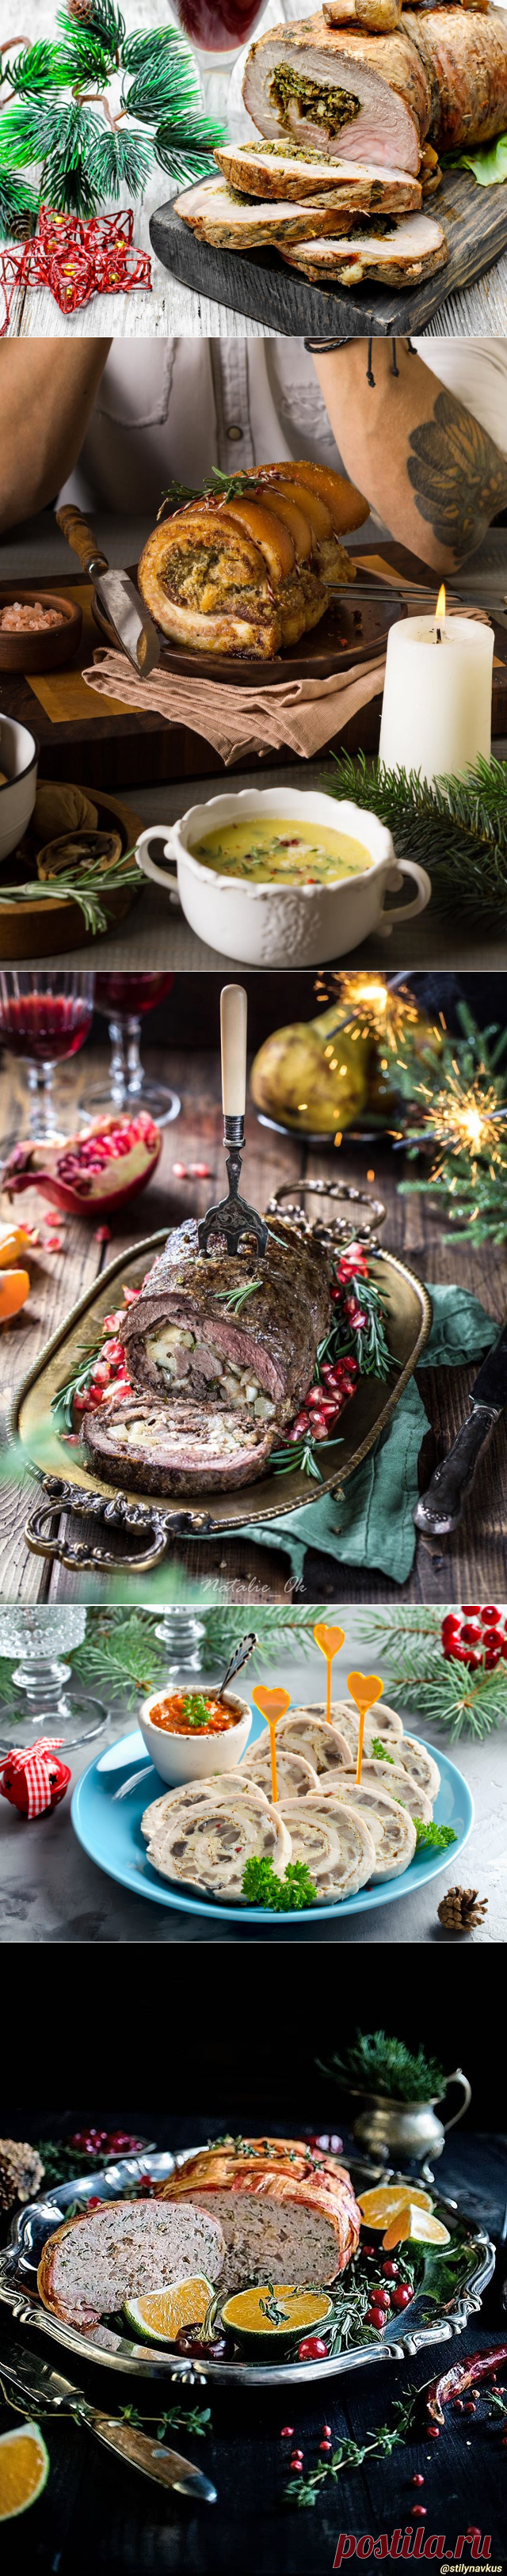 Готовить непременно! Пять рецептов потрясающих мясных рулетов к новогоднему столу